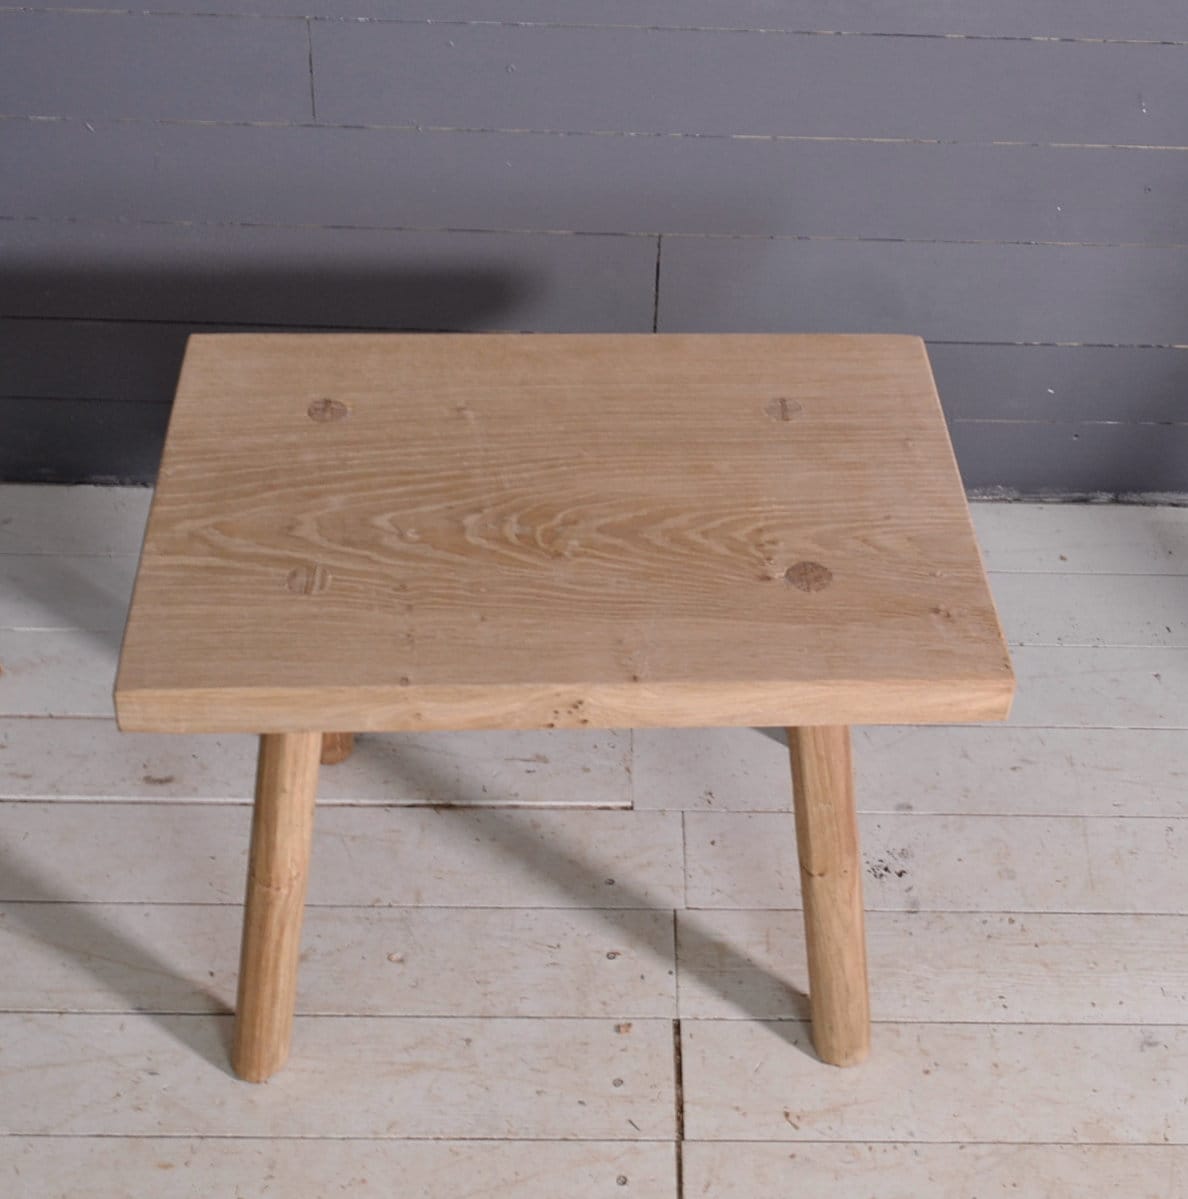 Petite table en chêne massif, bout de canapé, banc d'intérieur en bois